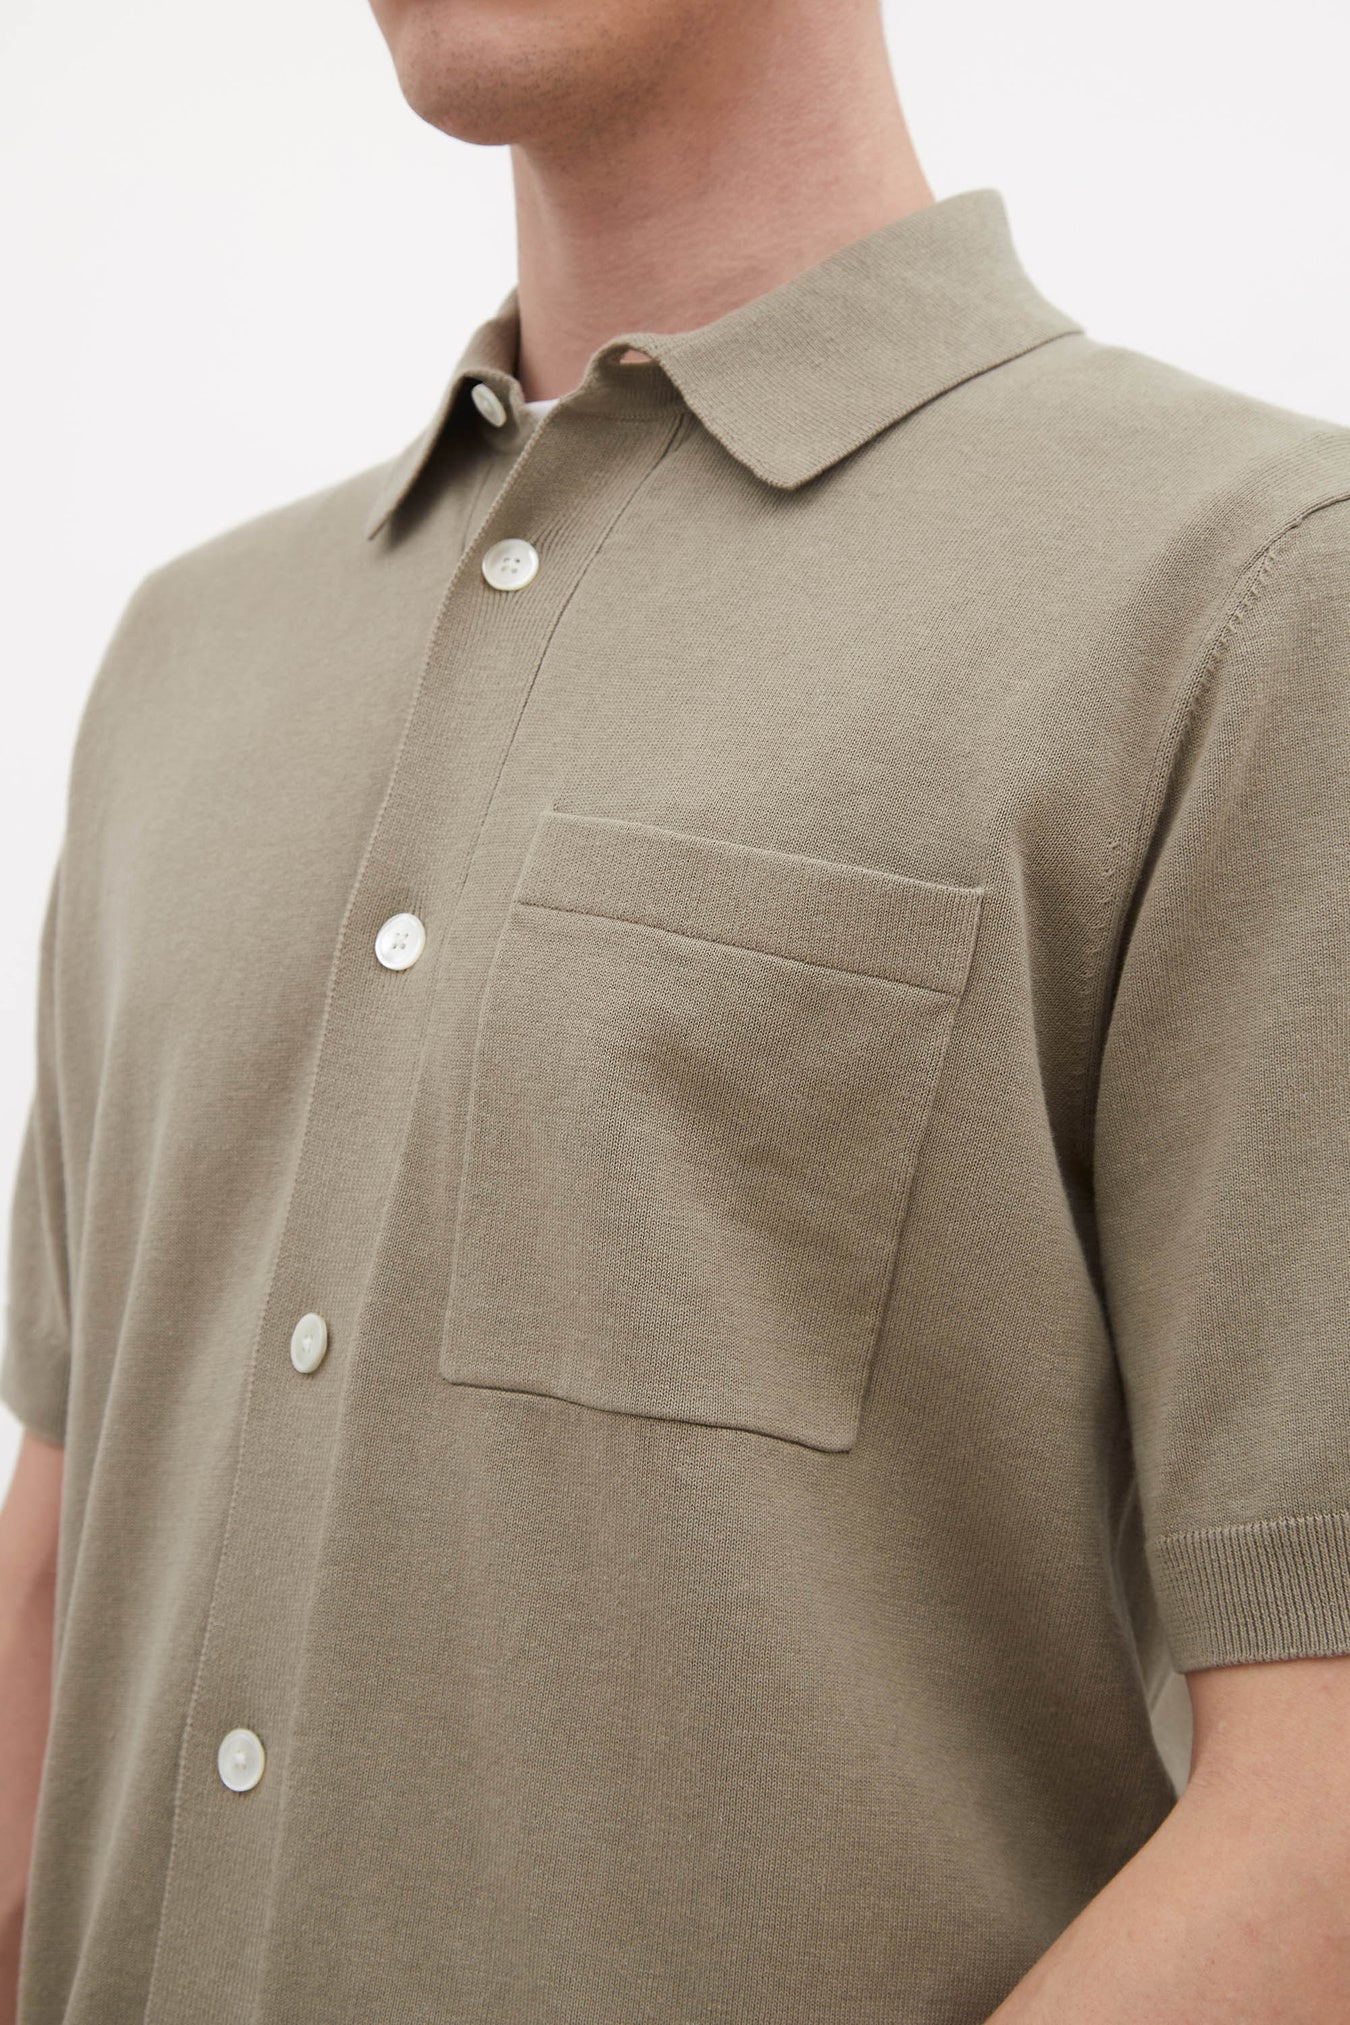 Rollo Cotton Linen SS Shirt - Clay